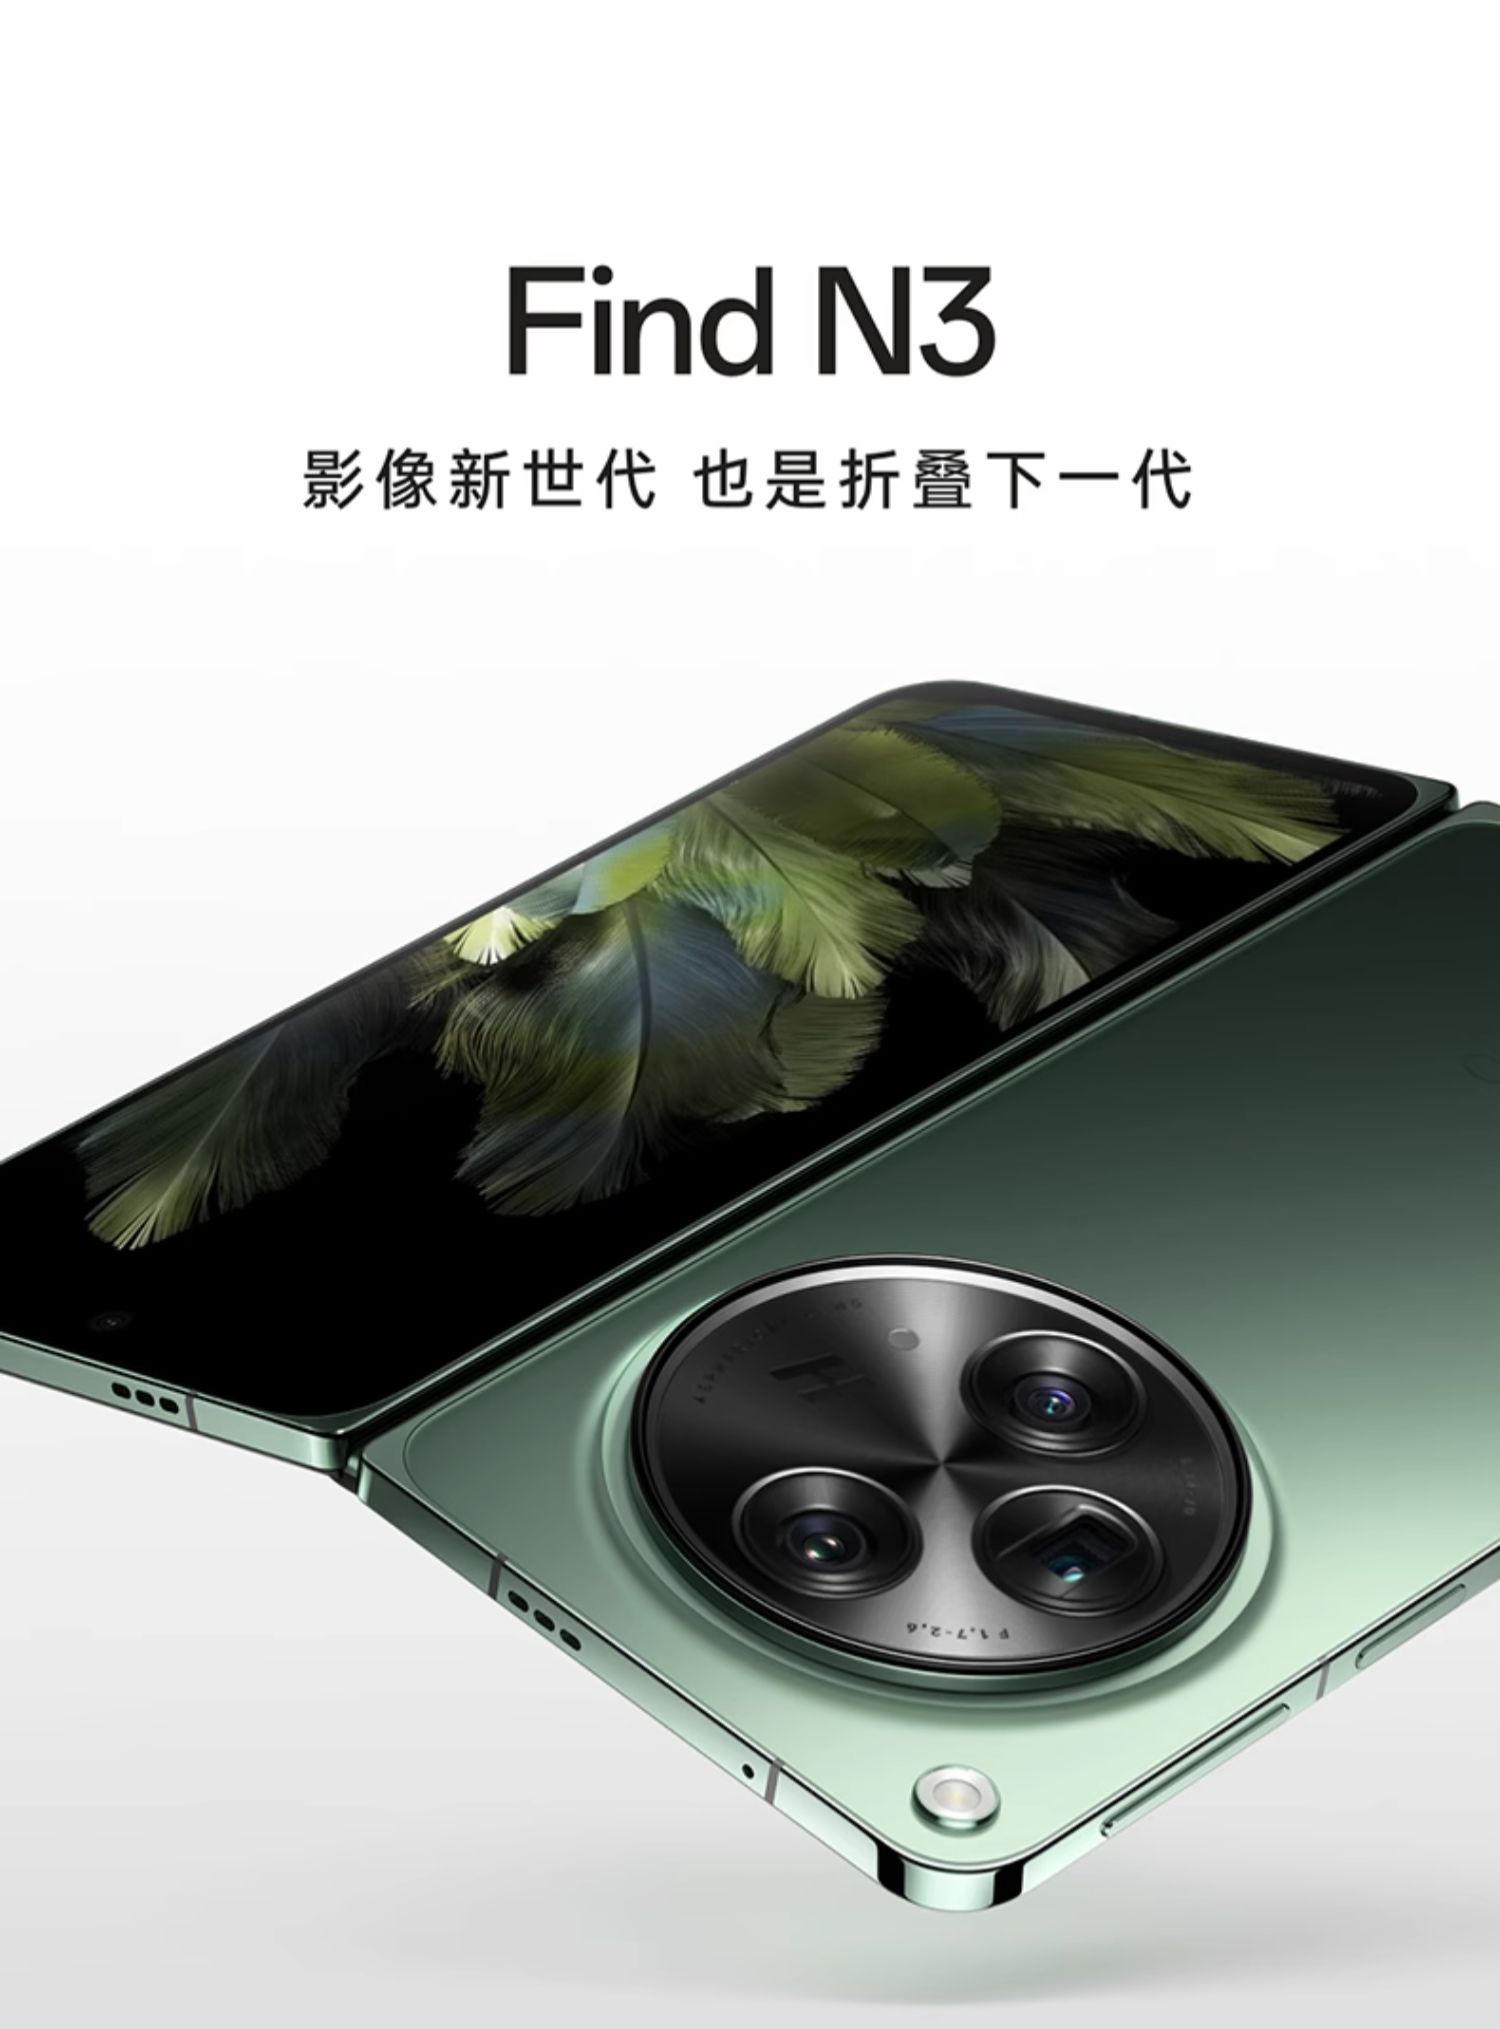 find n3